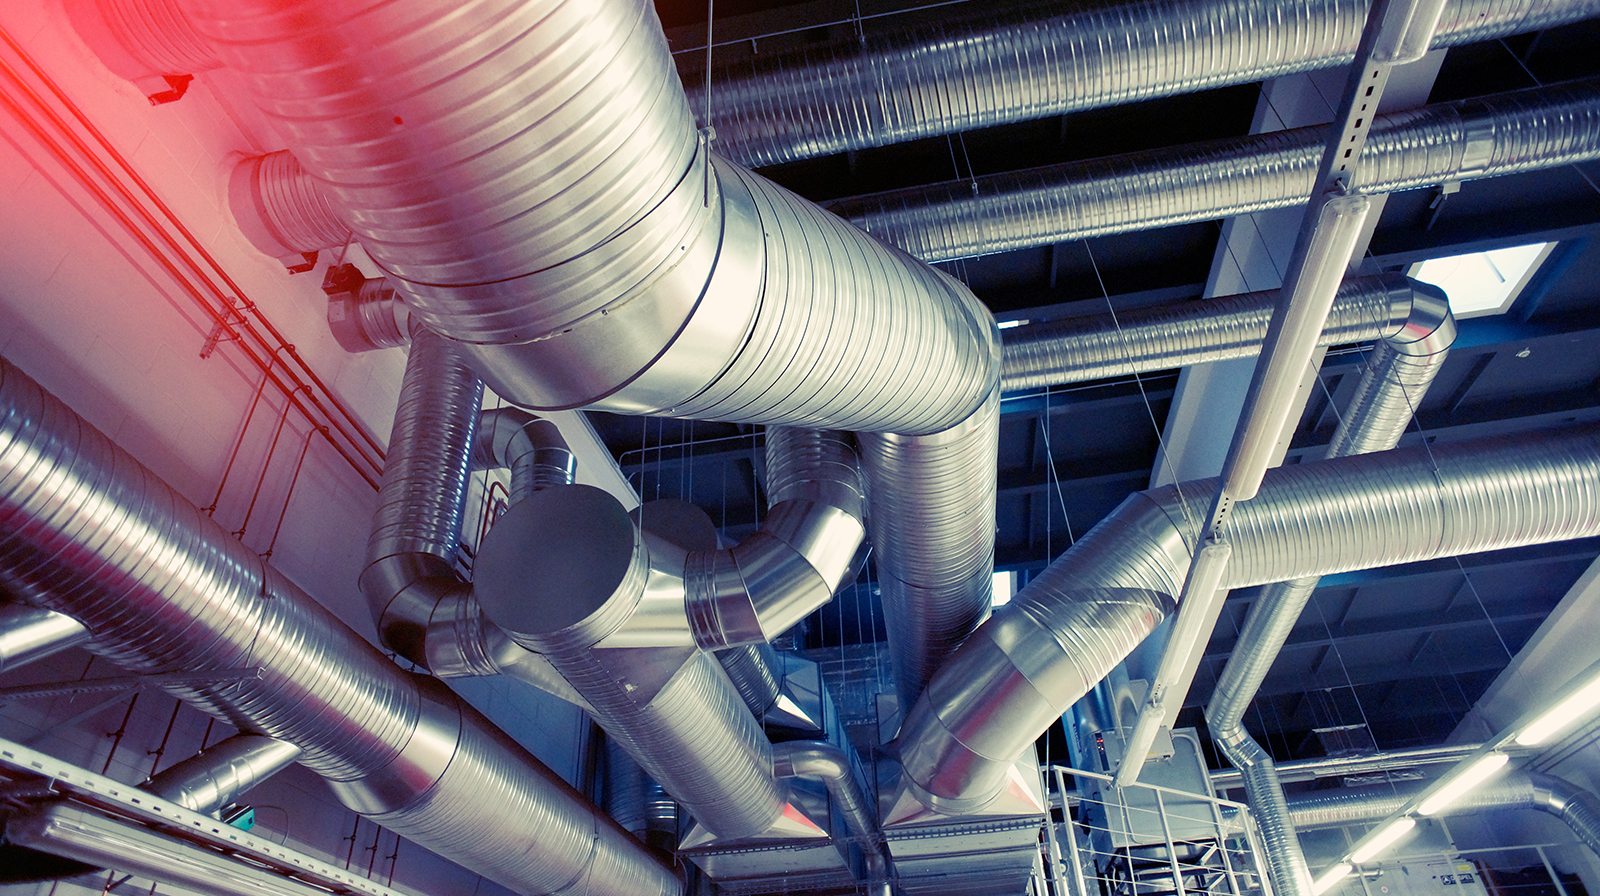 Промышленная вентиляция - доступные решения. Что нужно учитывать при выборе?